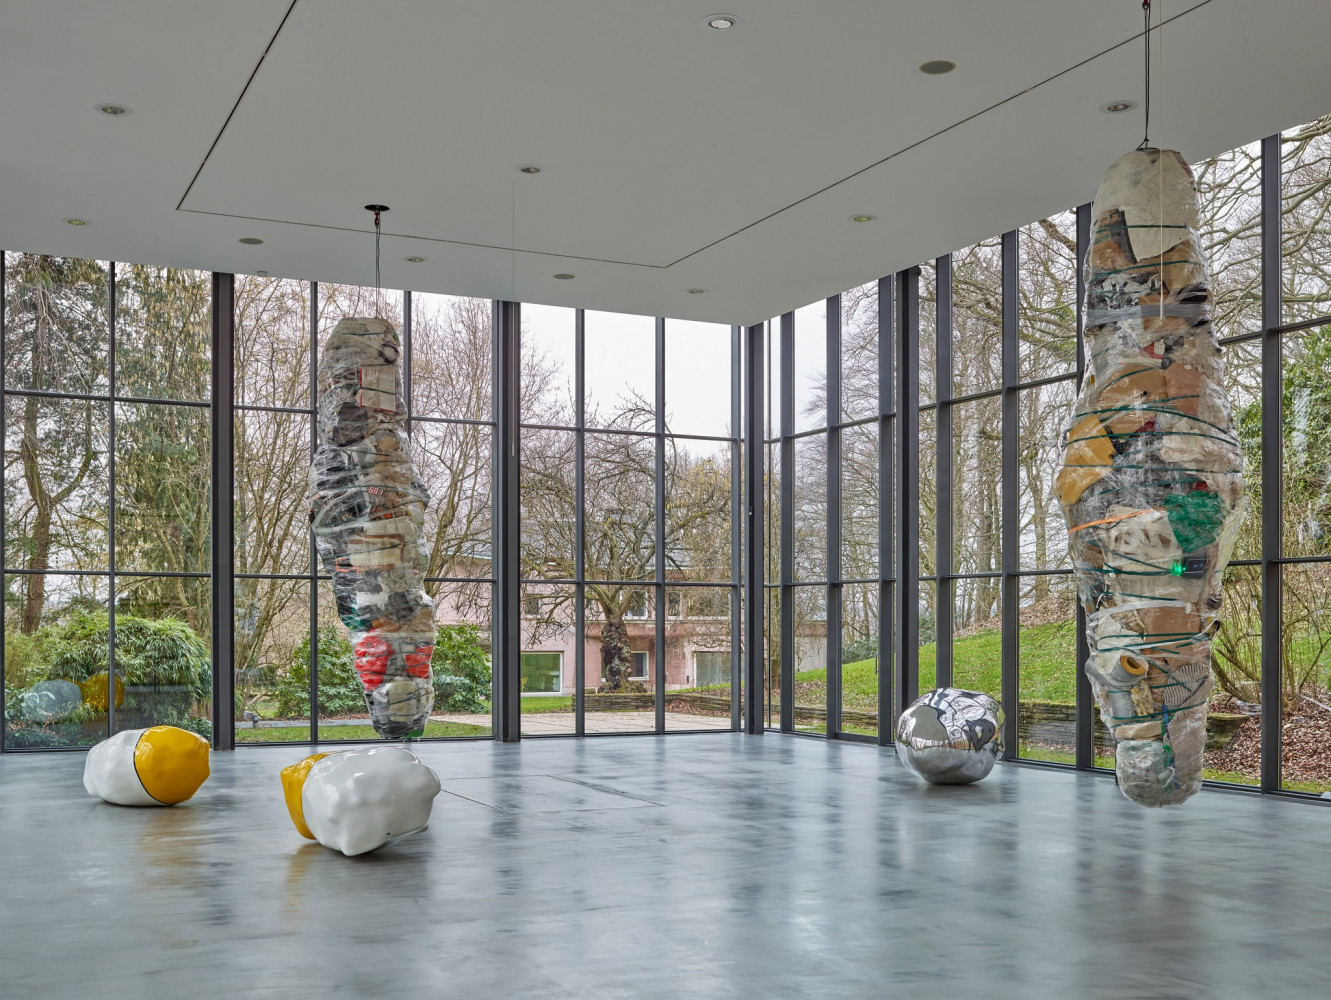 Wilhelm Mundt, ‘Unklumpen’, Installation view, Buchmann Galerie, 2022